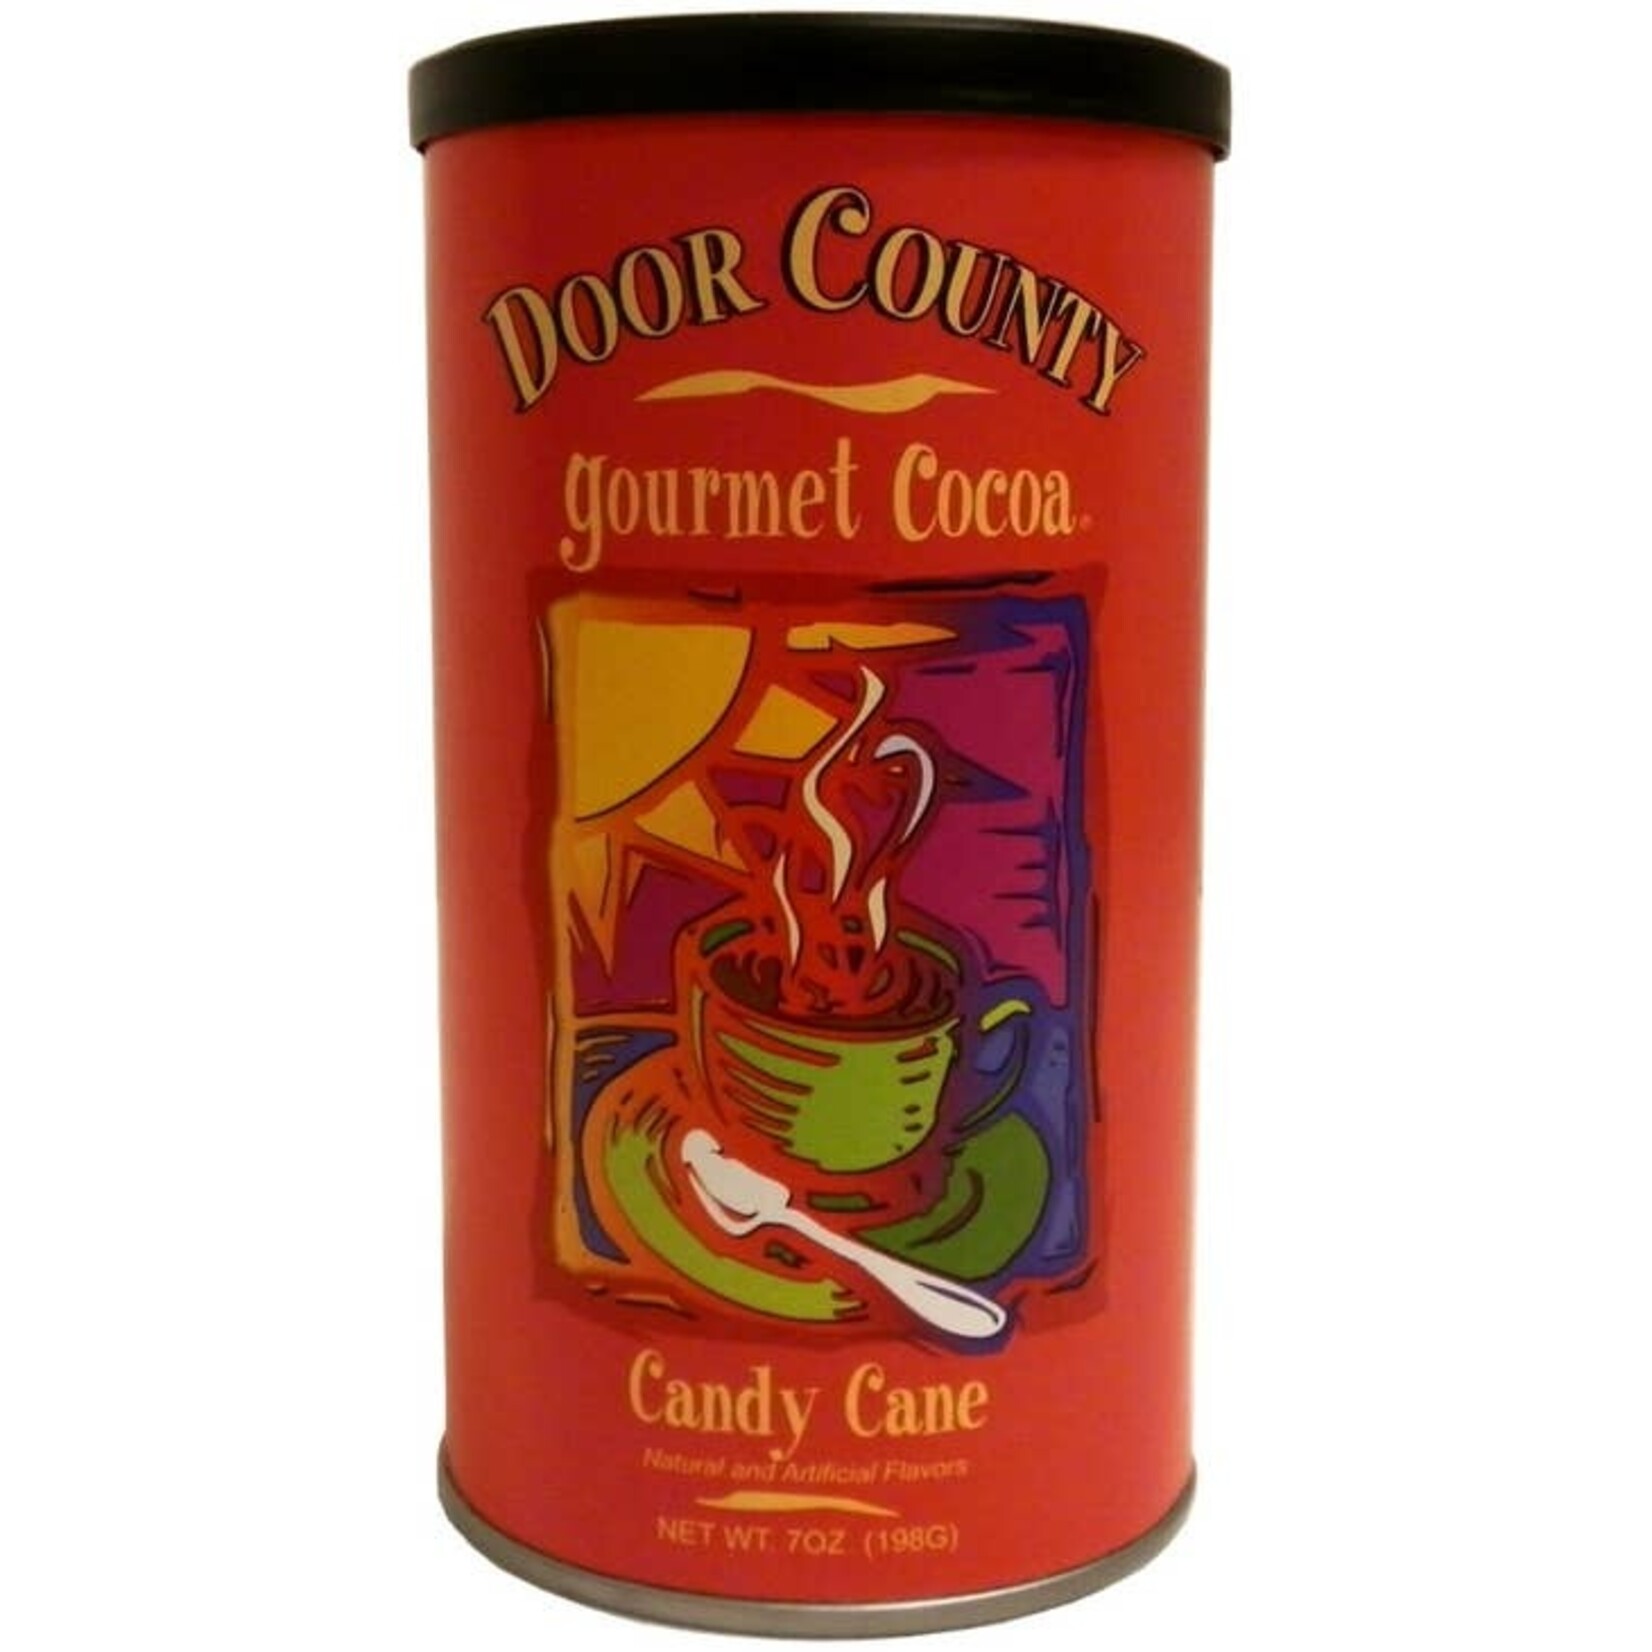 Door County Candy Cane Gourmet Hot Cocoa - 7oz Tin